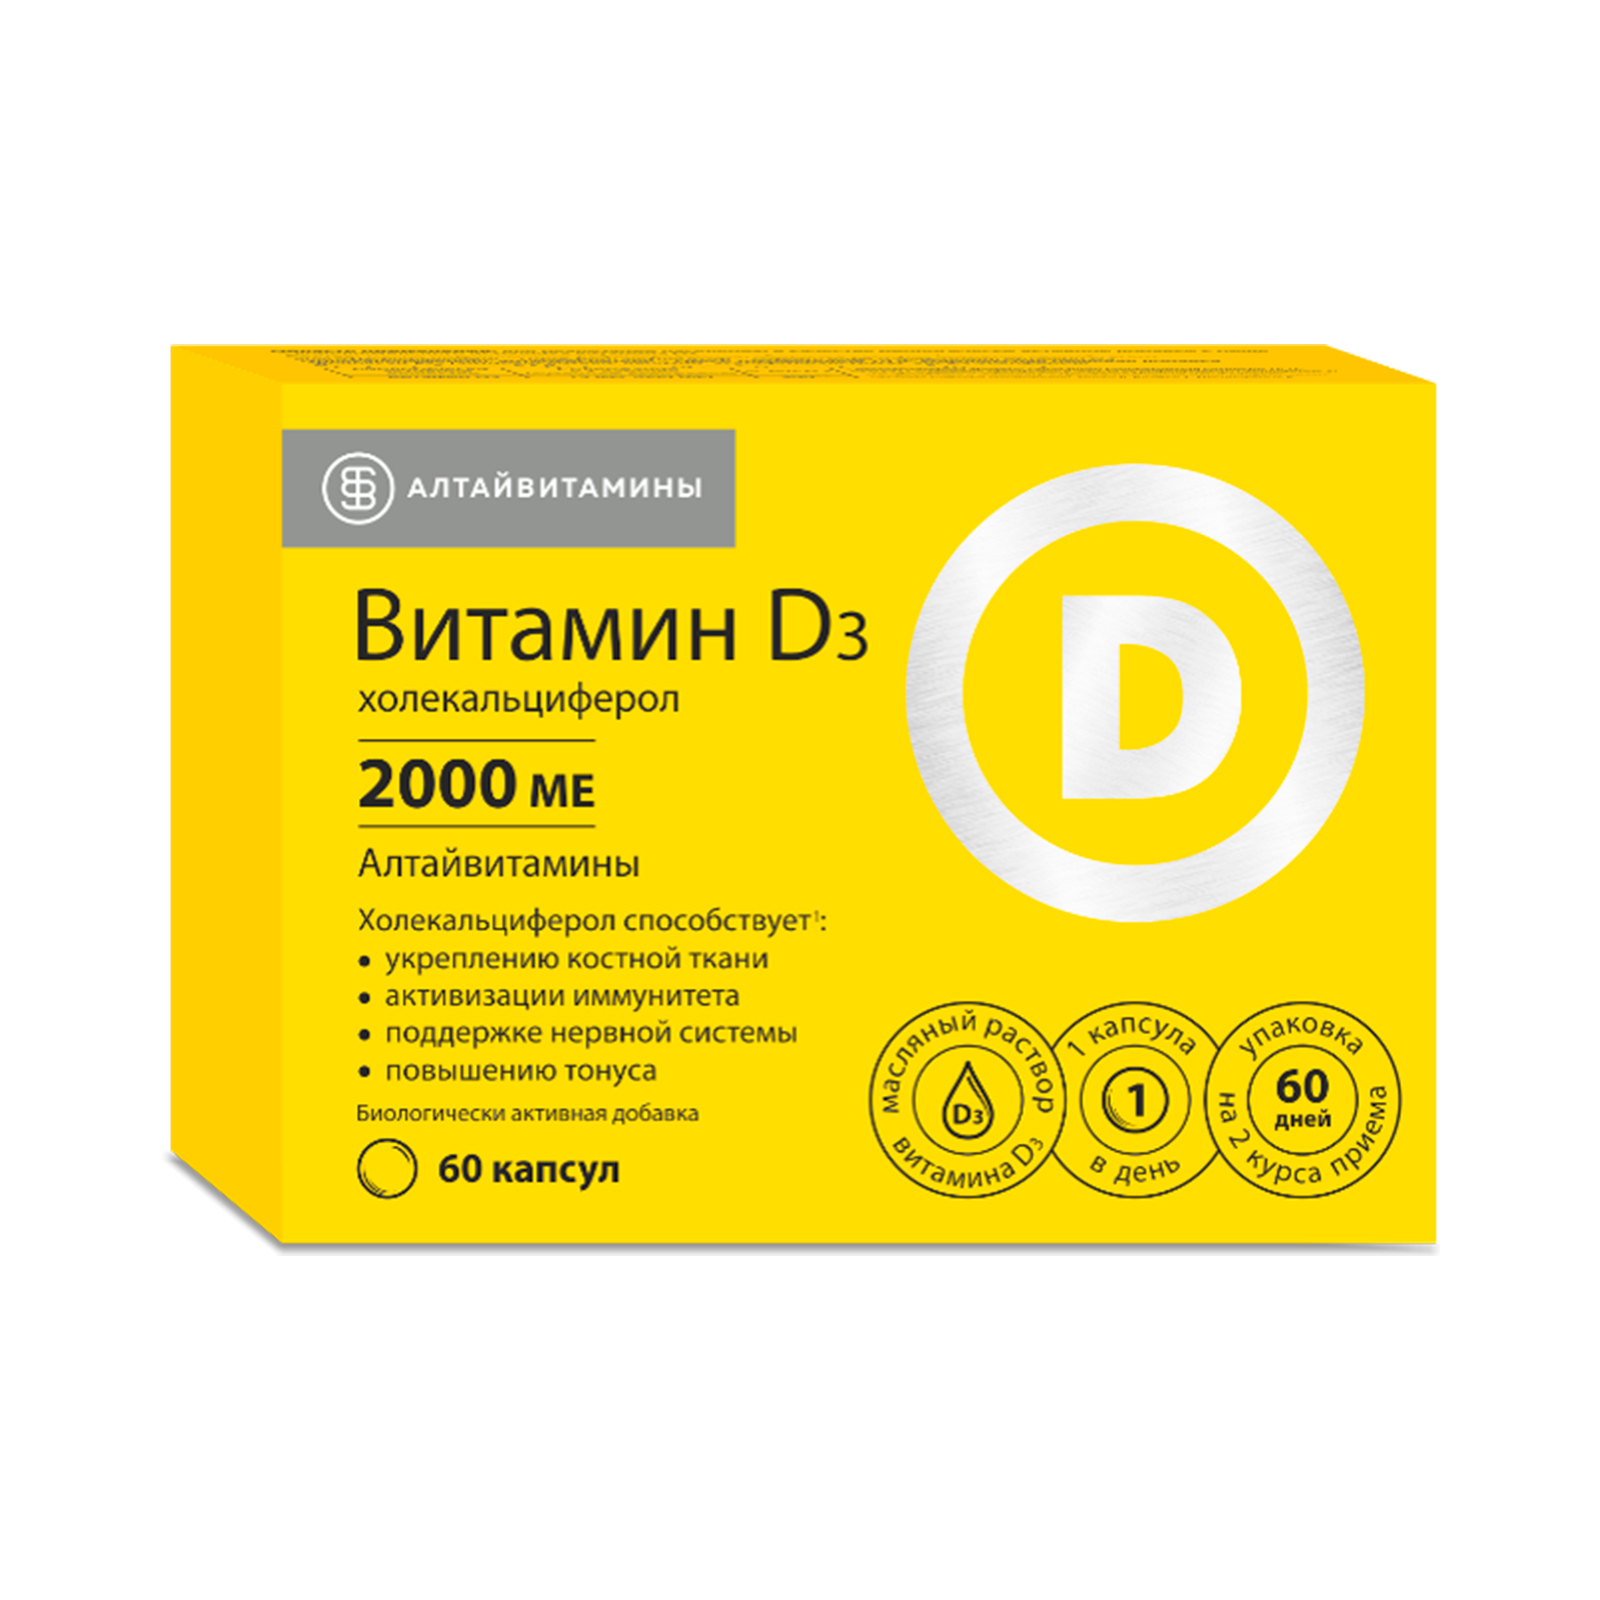 Витамин D3 Алтайвитамины 2000 me витамины для волос кожи иммунитета капсулы 60 шт.